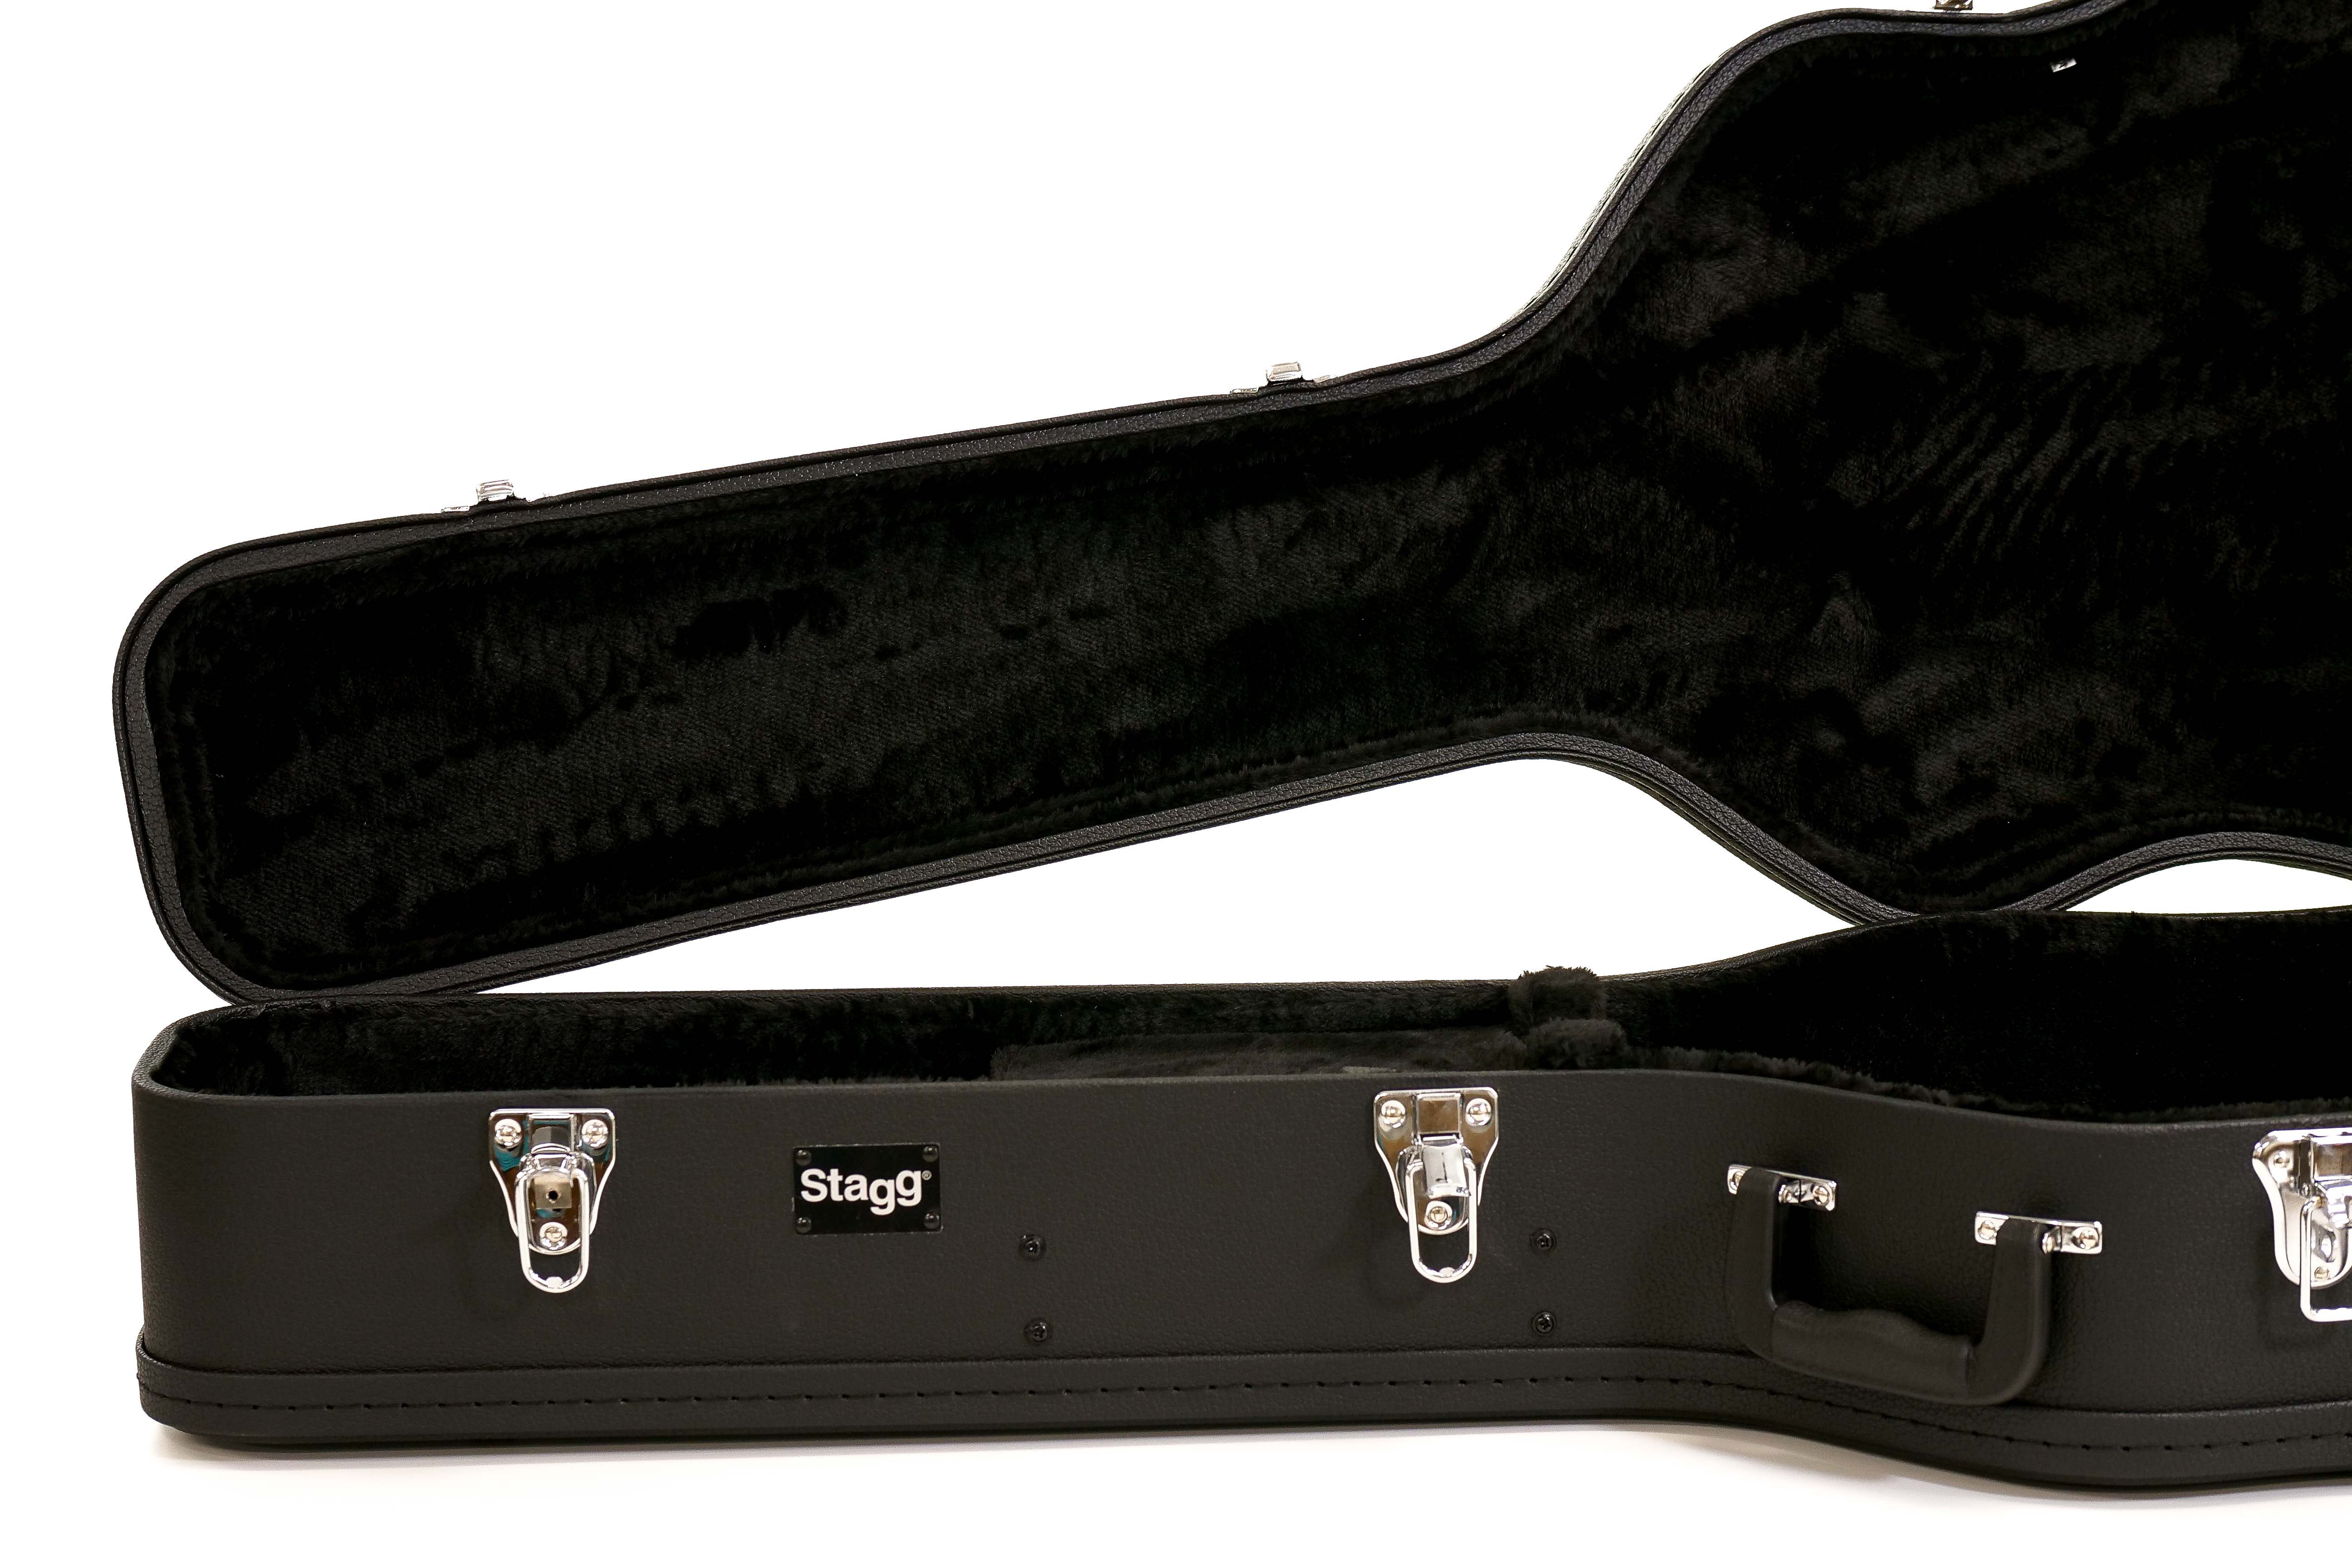 Stagg GCA-W-BK Dreadnought Hardshell Guitar Case - Black